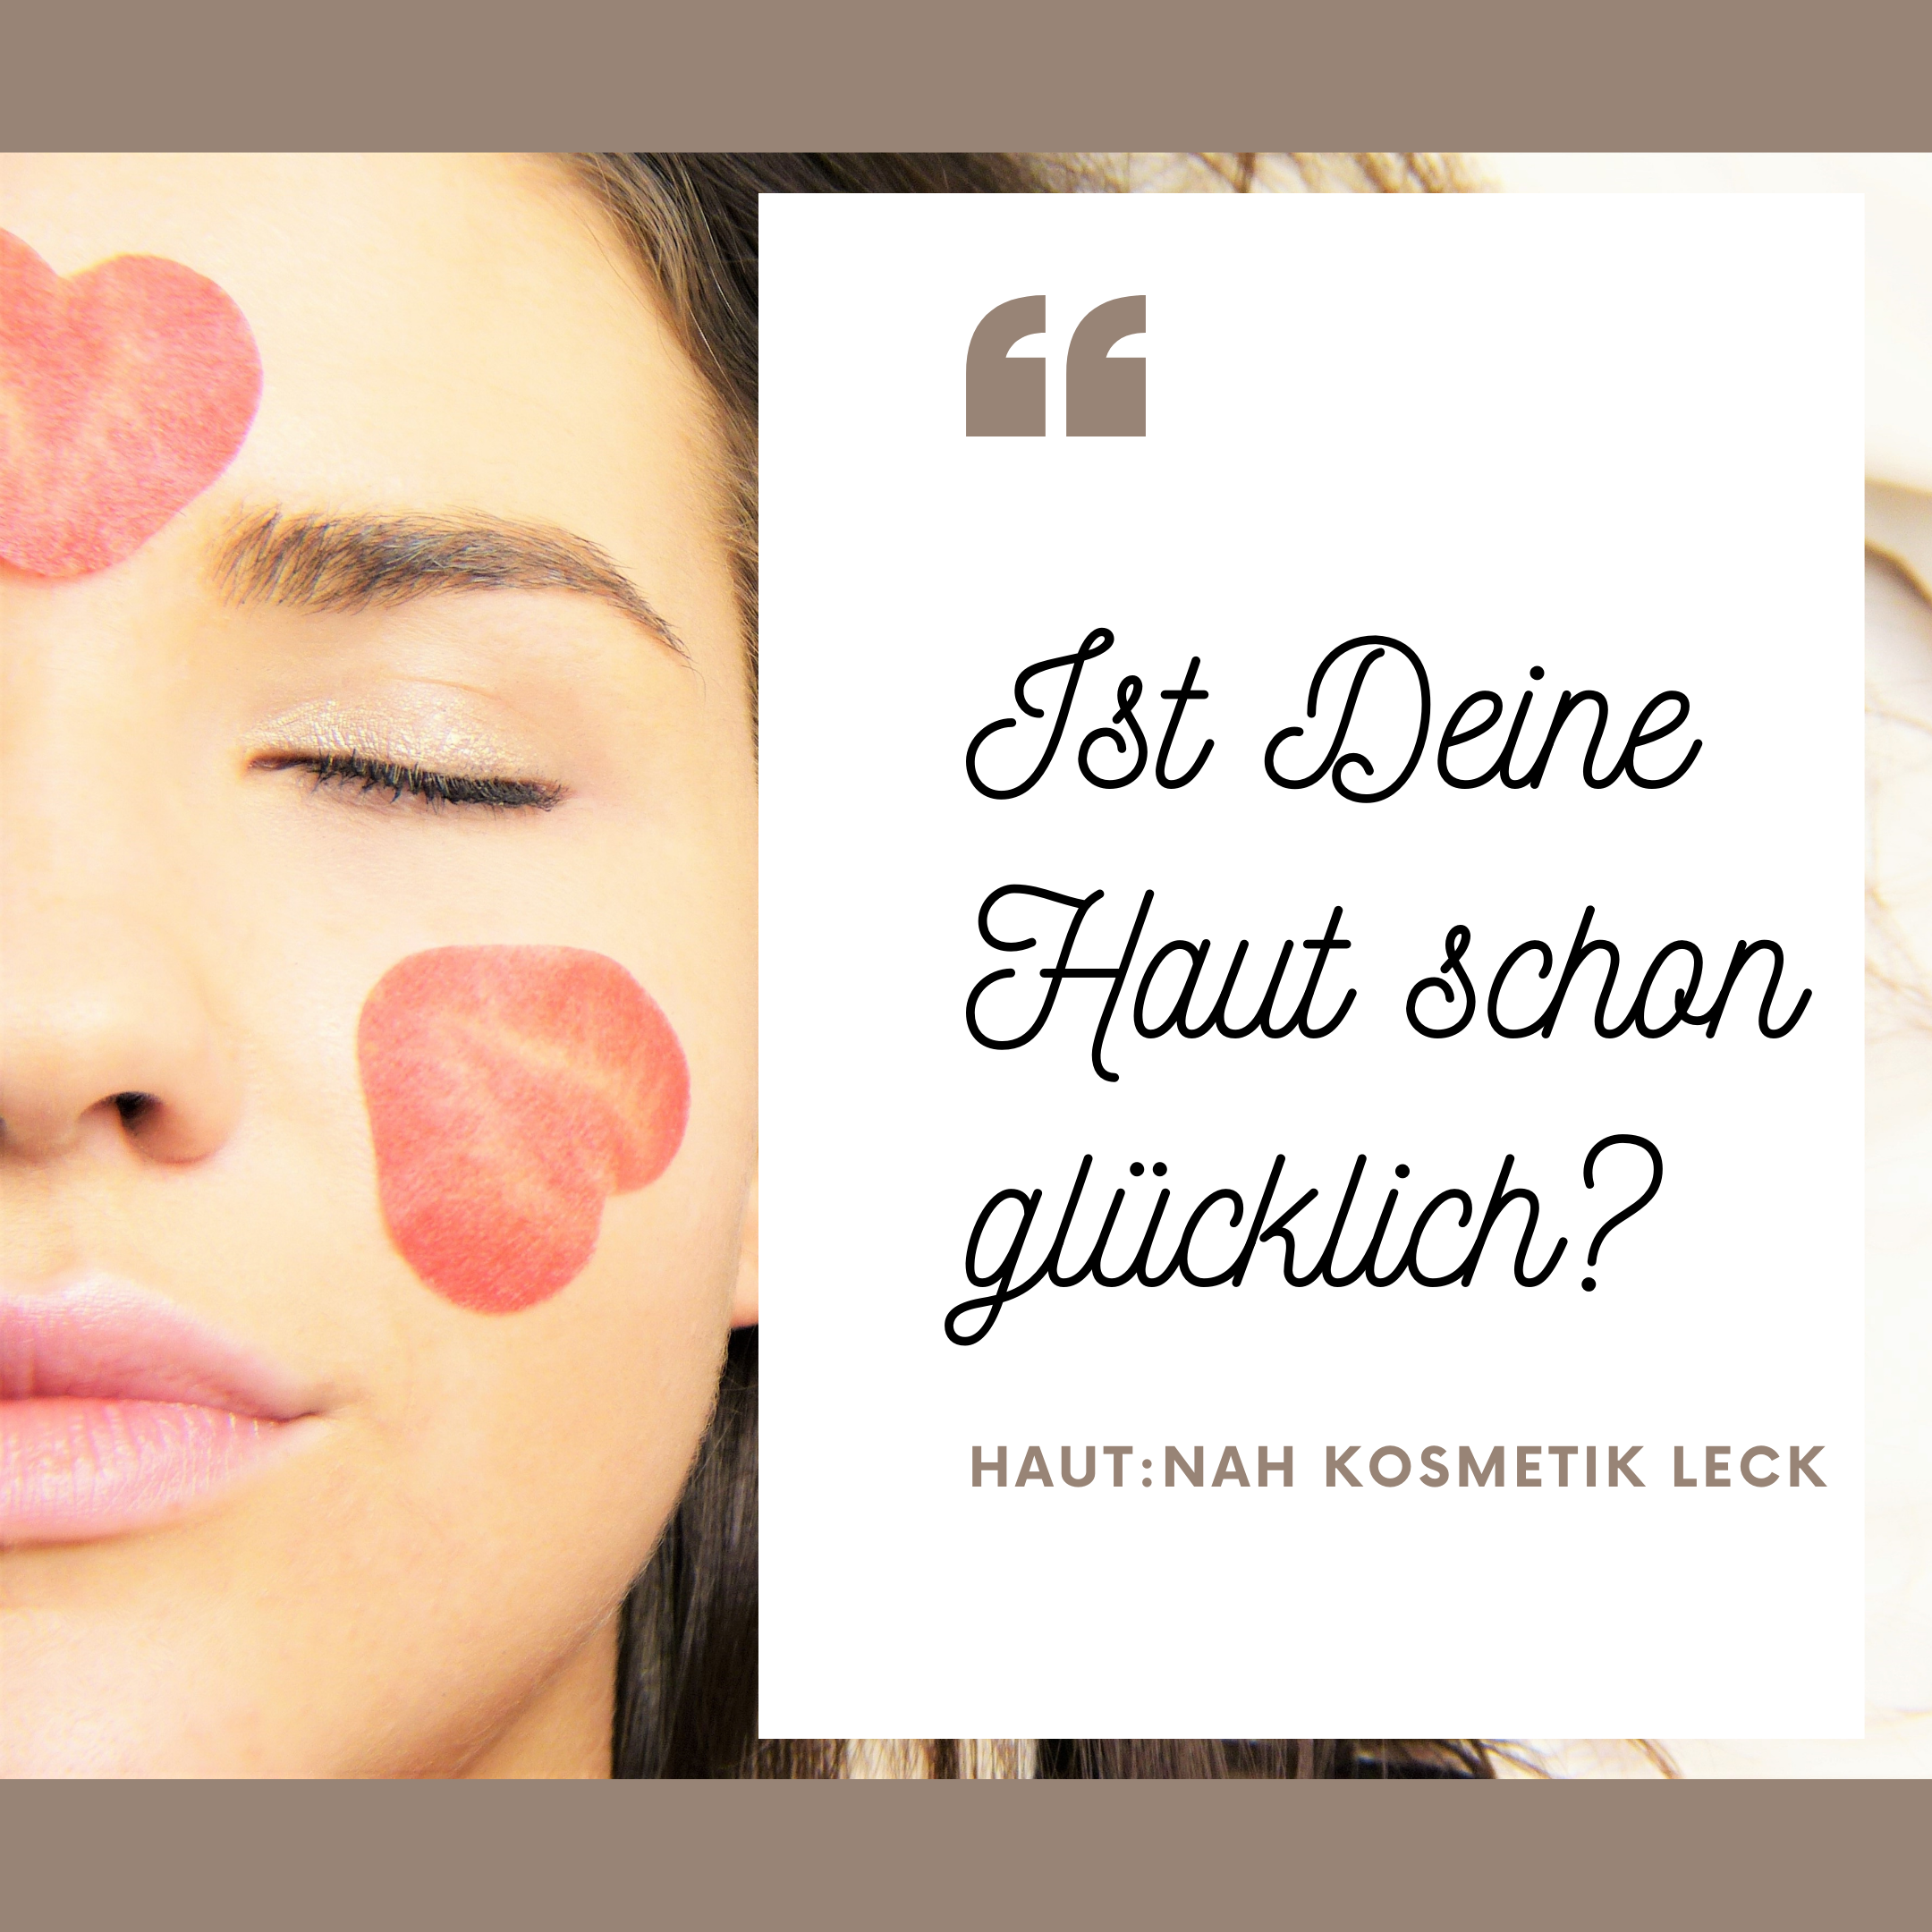 Featured image for “Ist Deine Haut schon glücklich?”